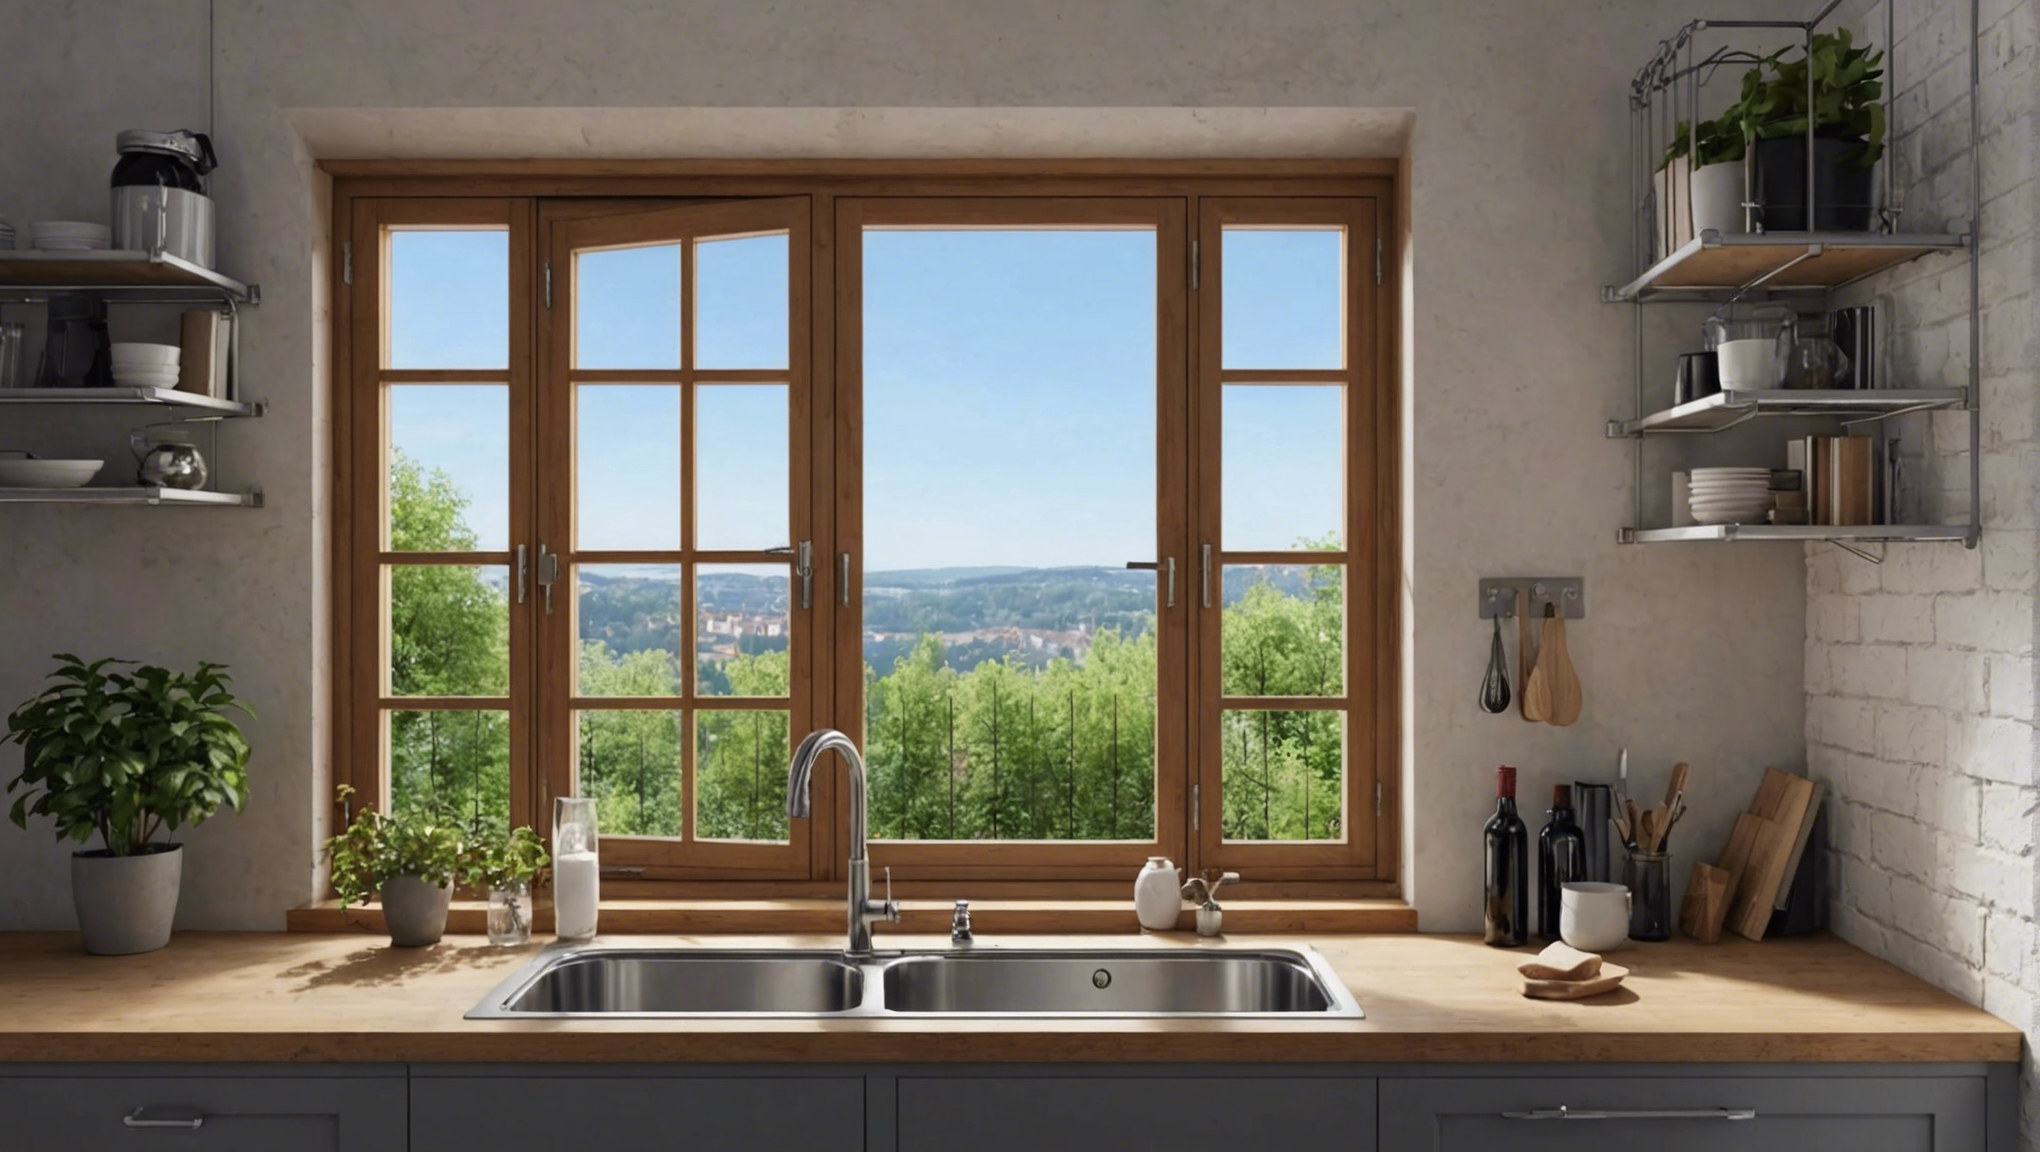 découvrez comment bénéficier de la prime rénov pour vos fenêtres et améliorer l'efficacité énergétique de votre logement.